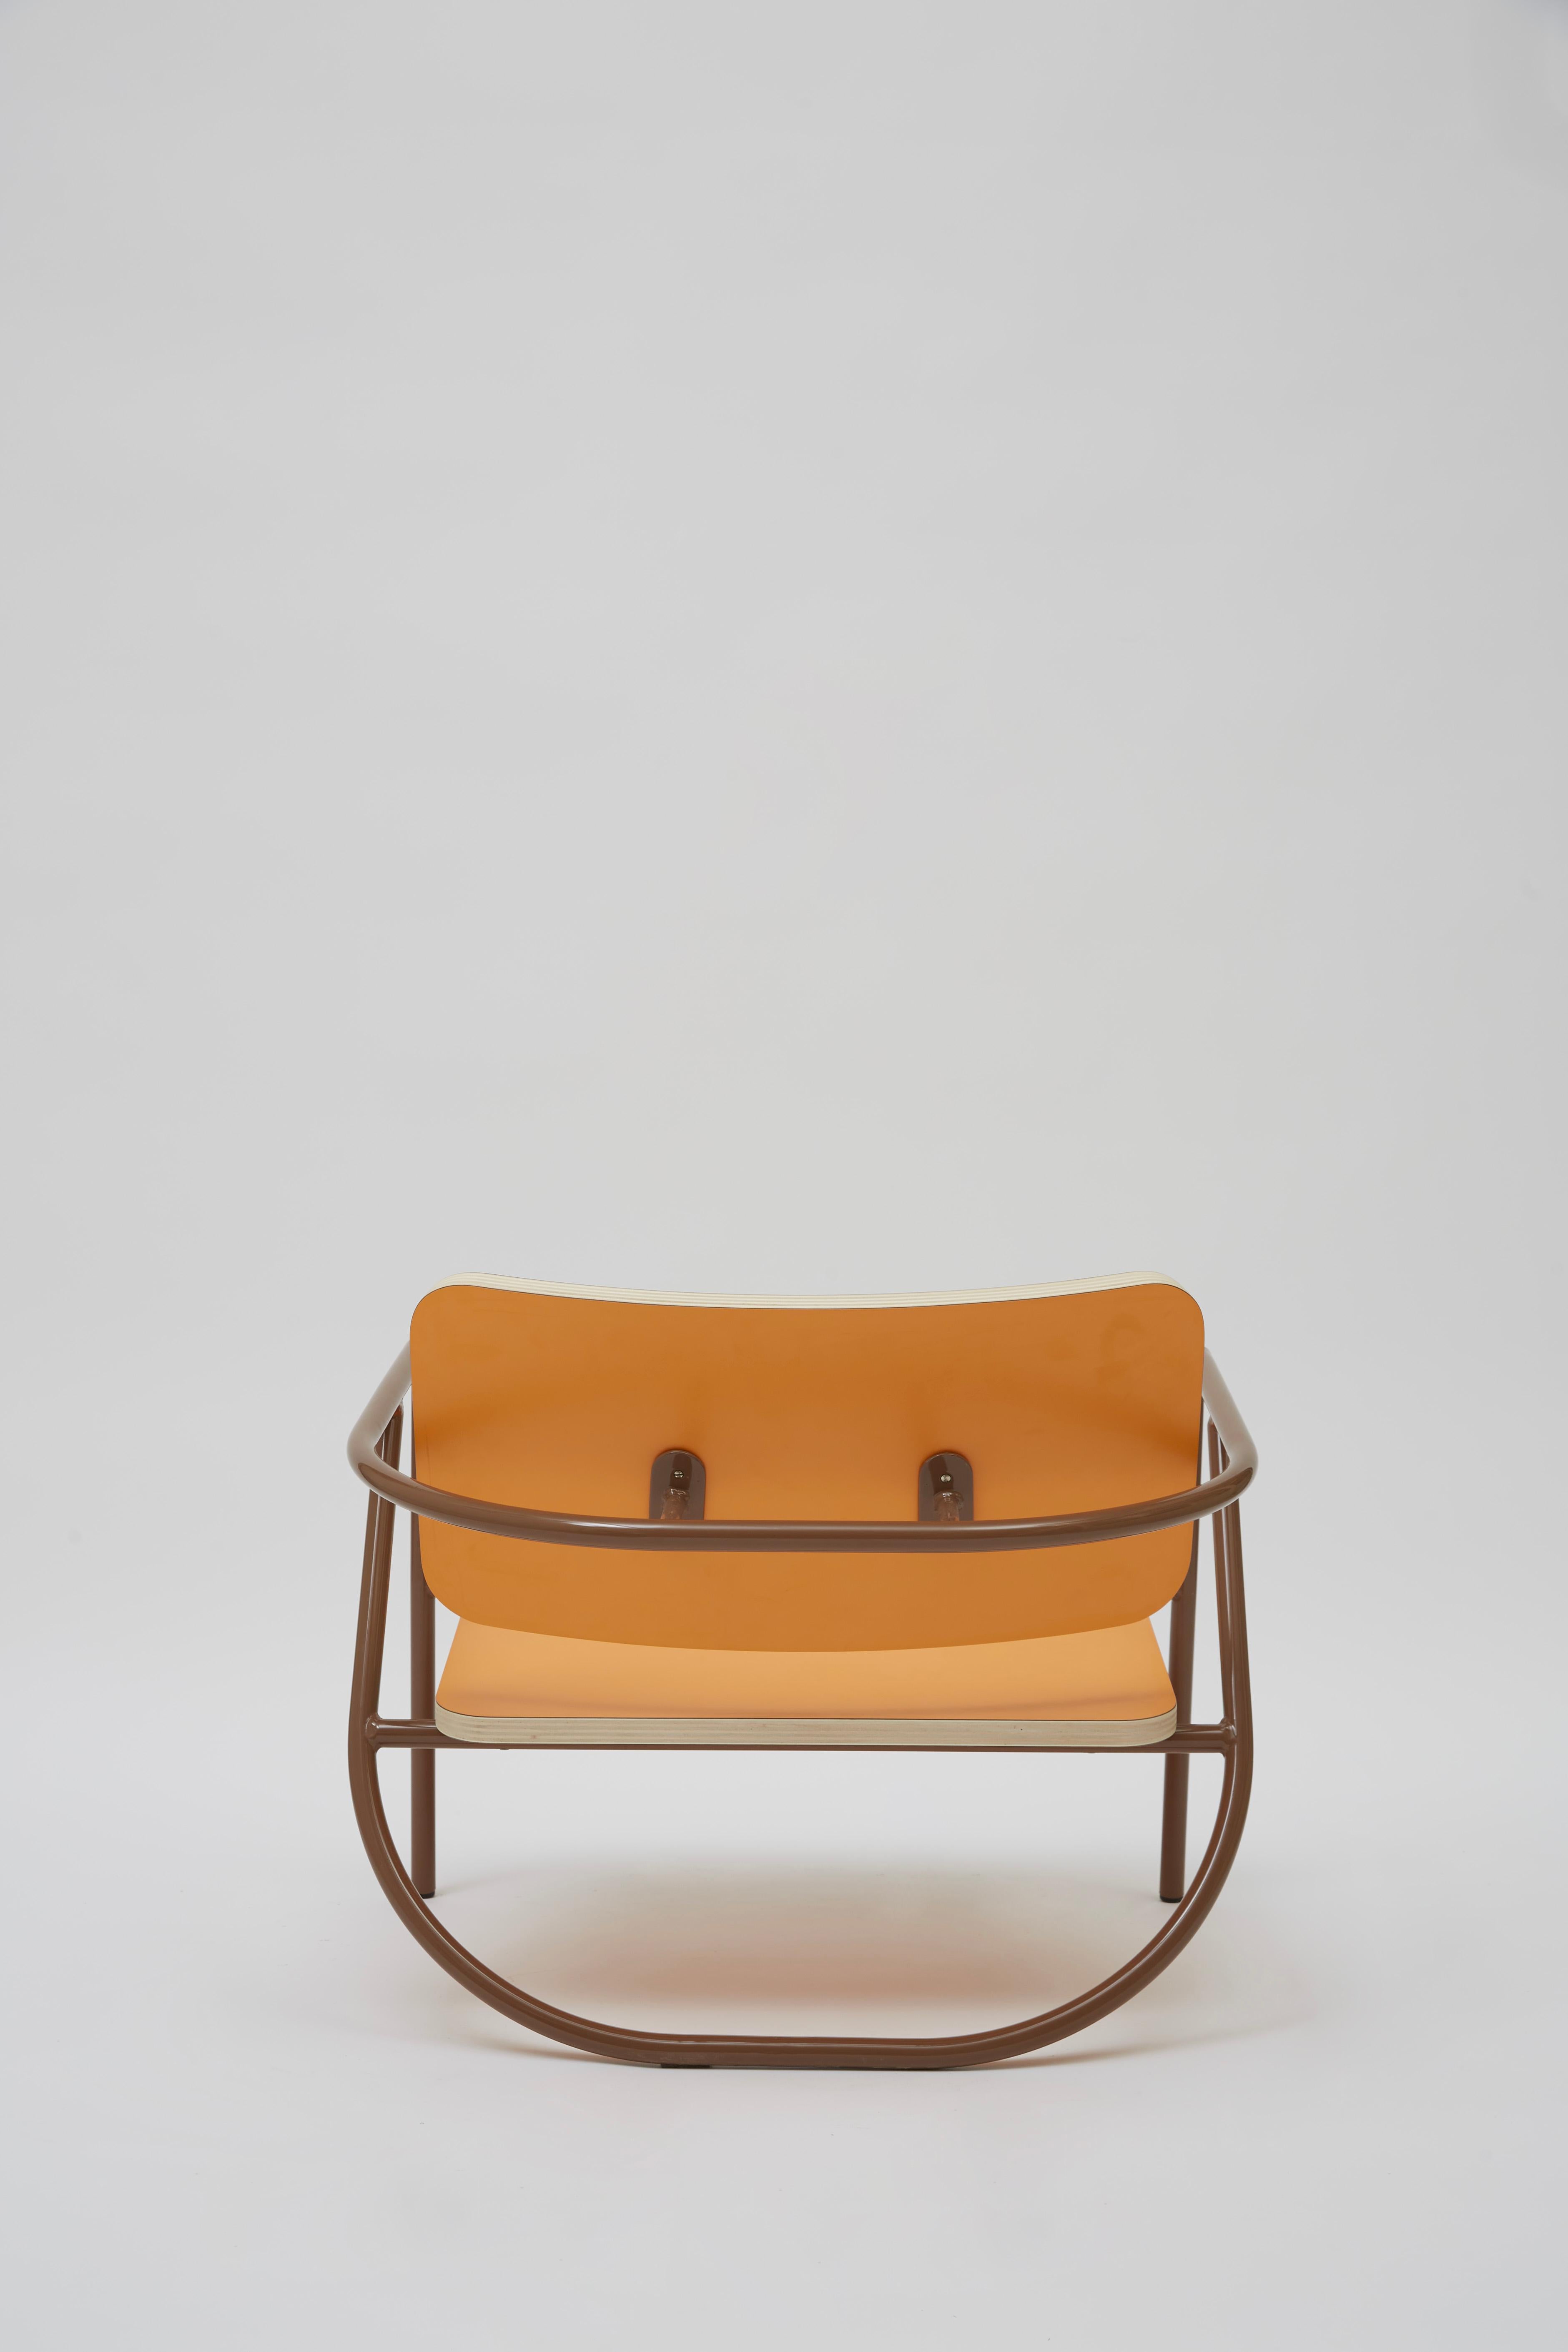 Contemporary La Misciù Easy Chair, Orange & Brown For Sale